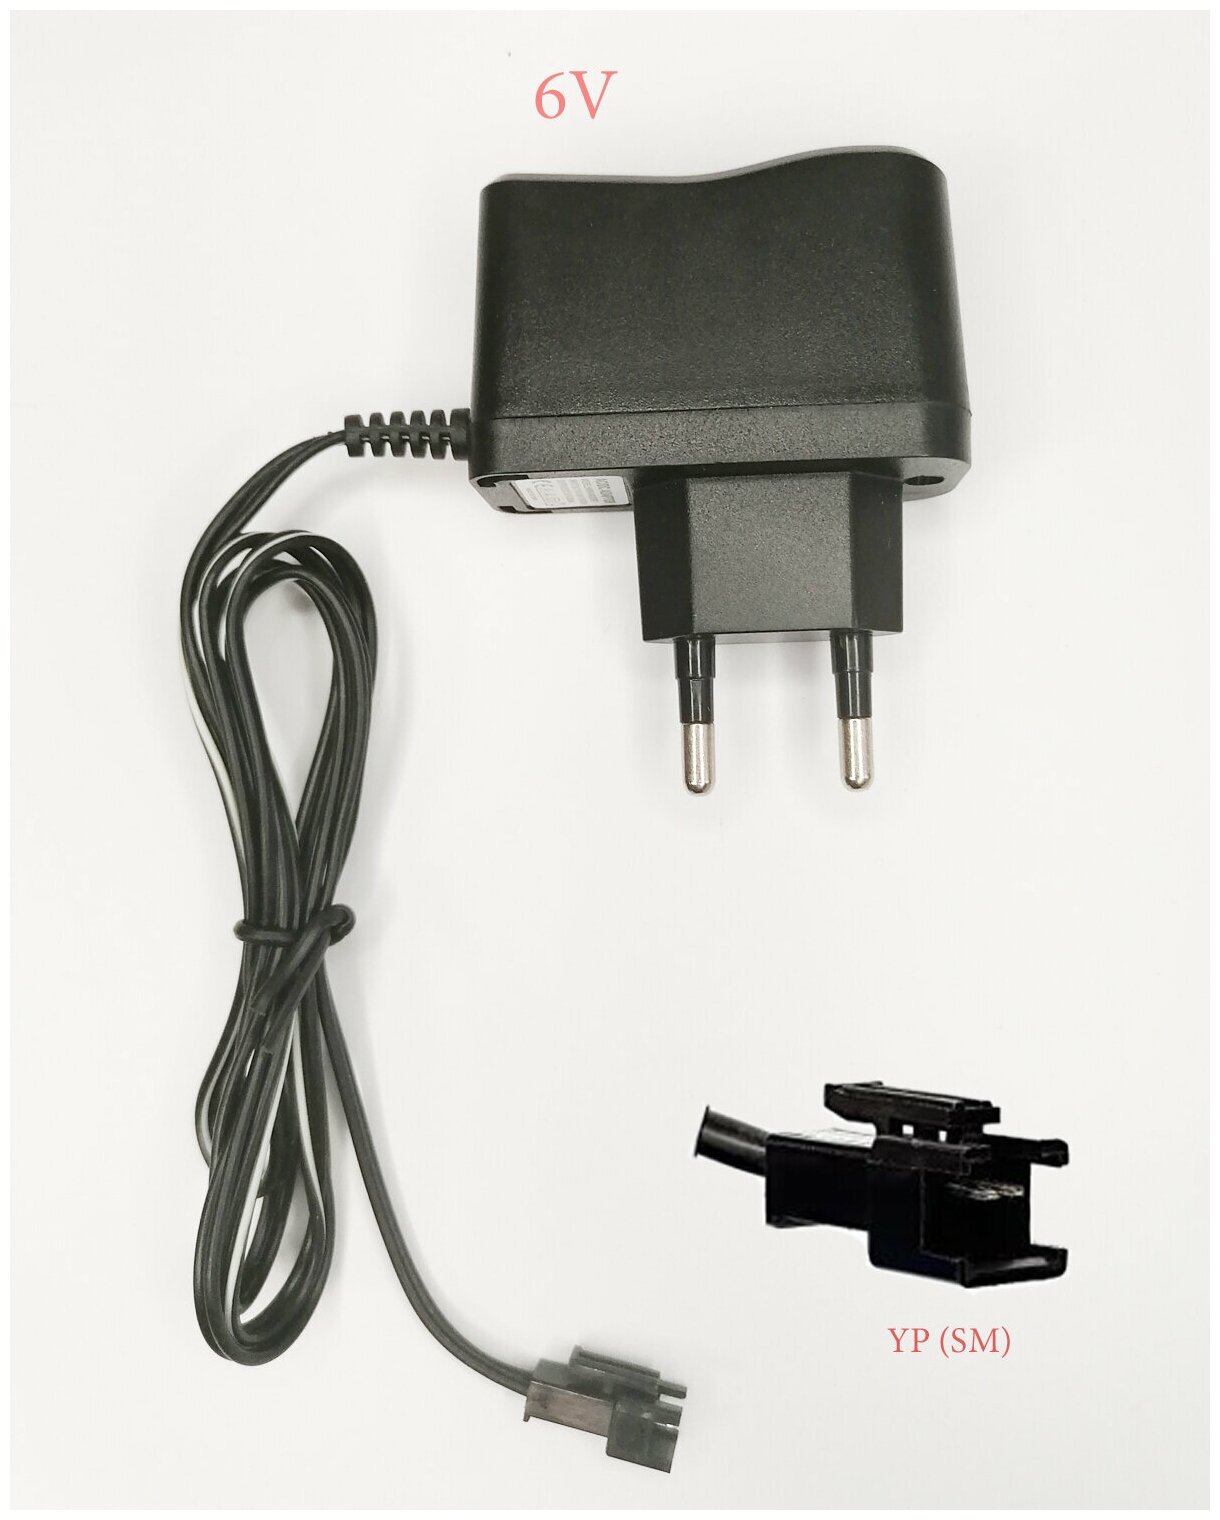 Зарядное устройство для Ni-Cd и Ni-Mh аккумуляторов 96V с разъемом YP (sm)